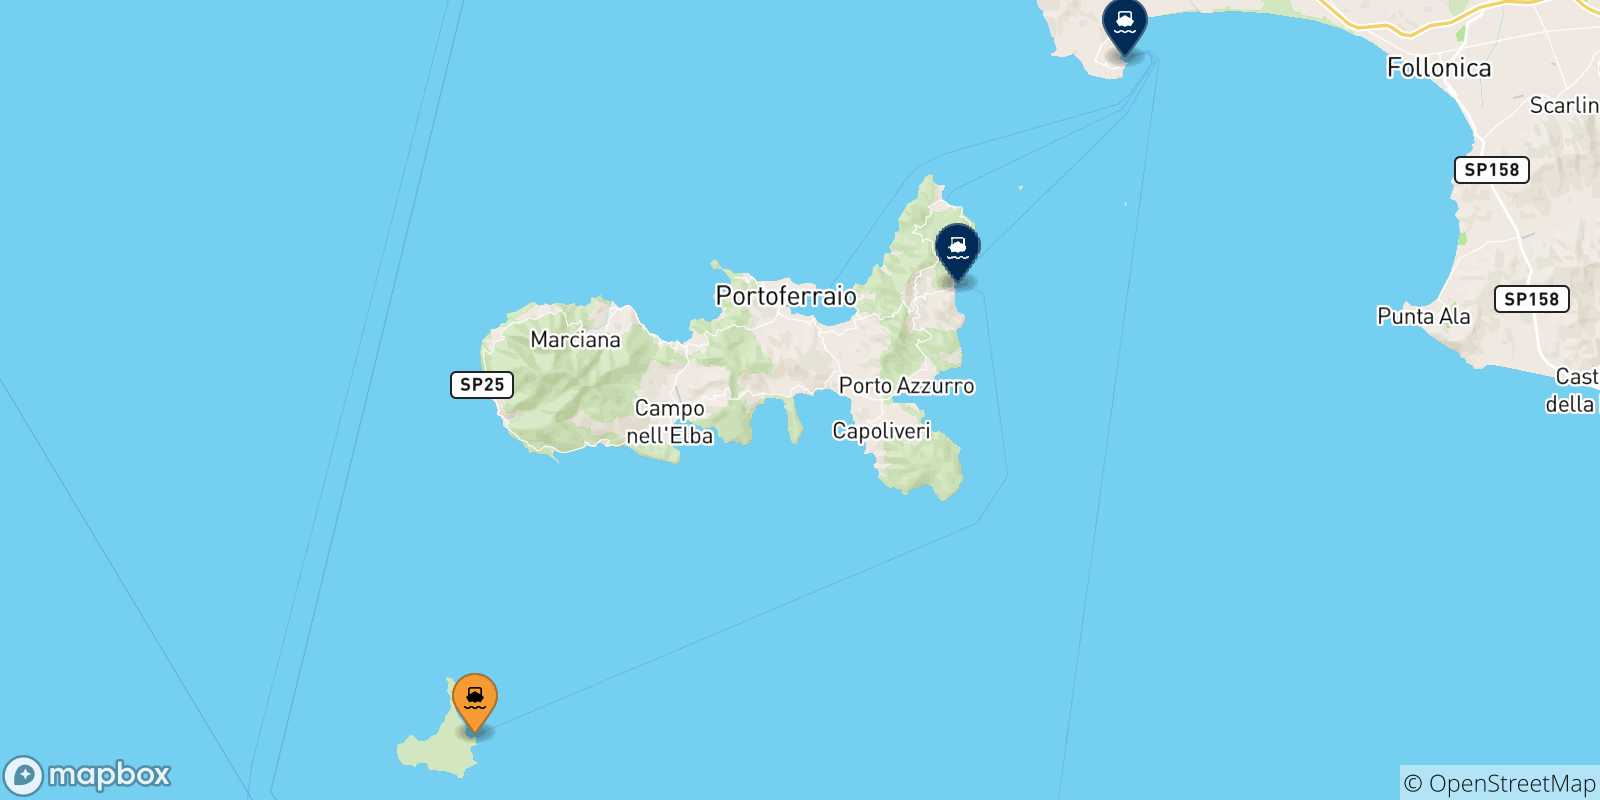 Mappa delle possibili rotte tra l'Isola Di Pianosa e l'Italia